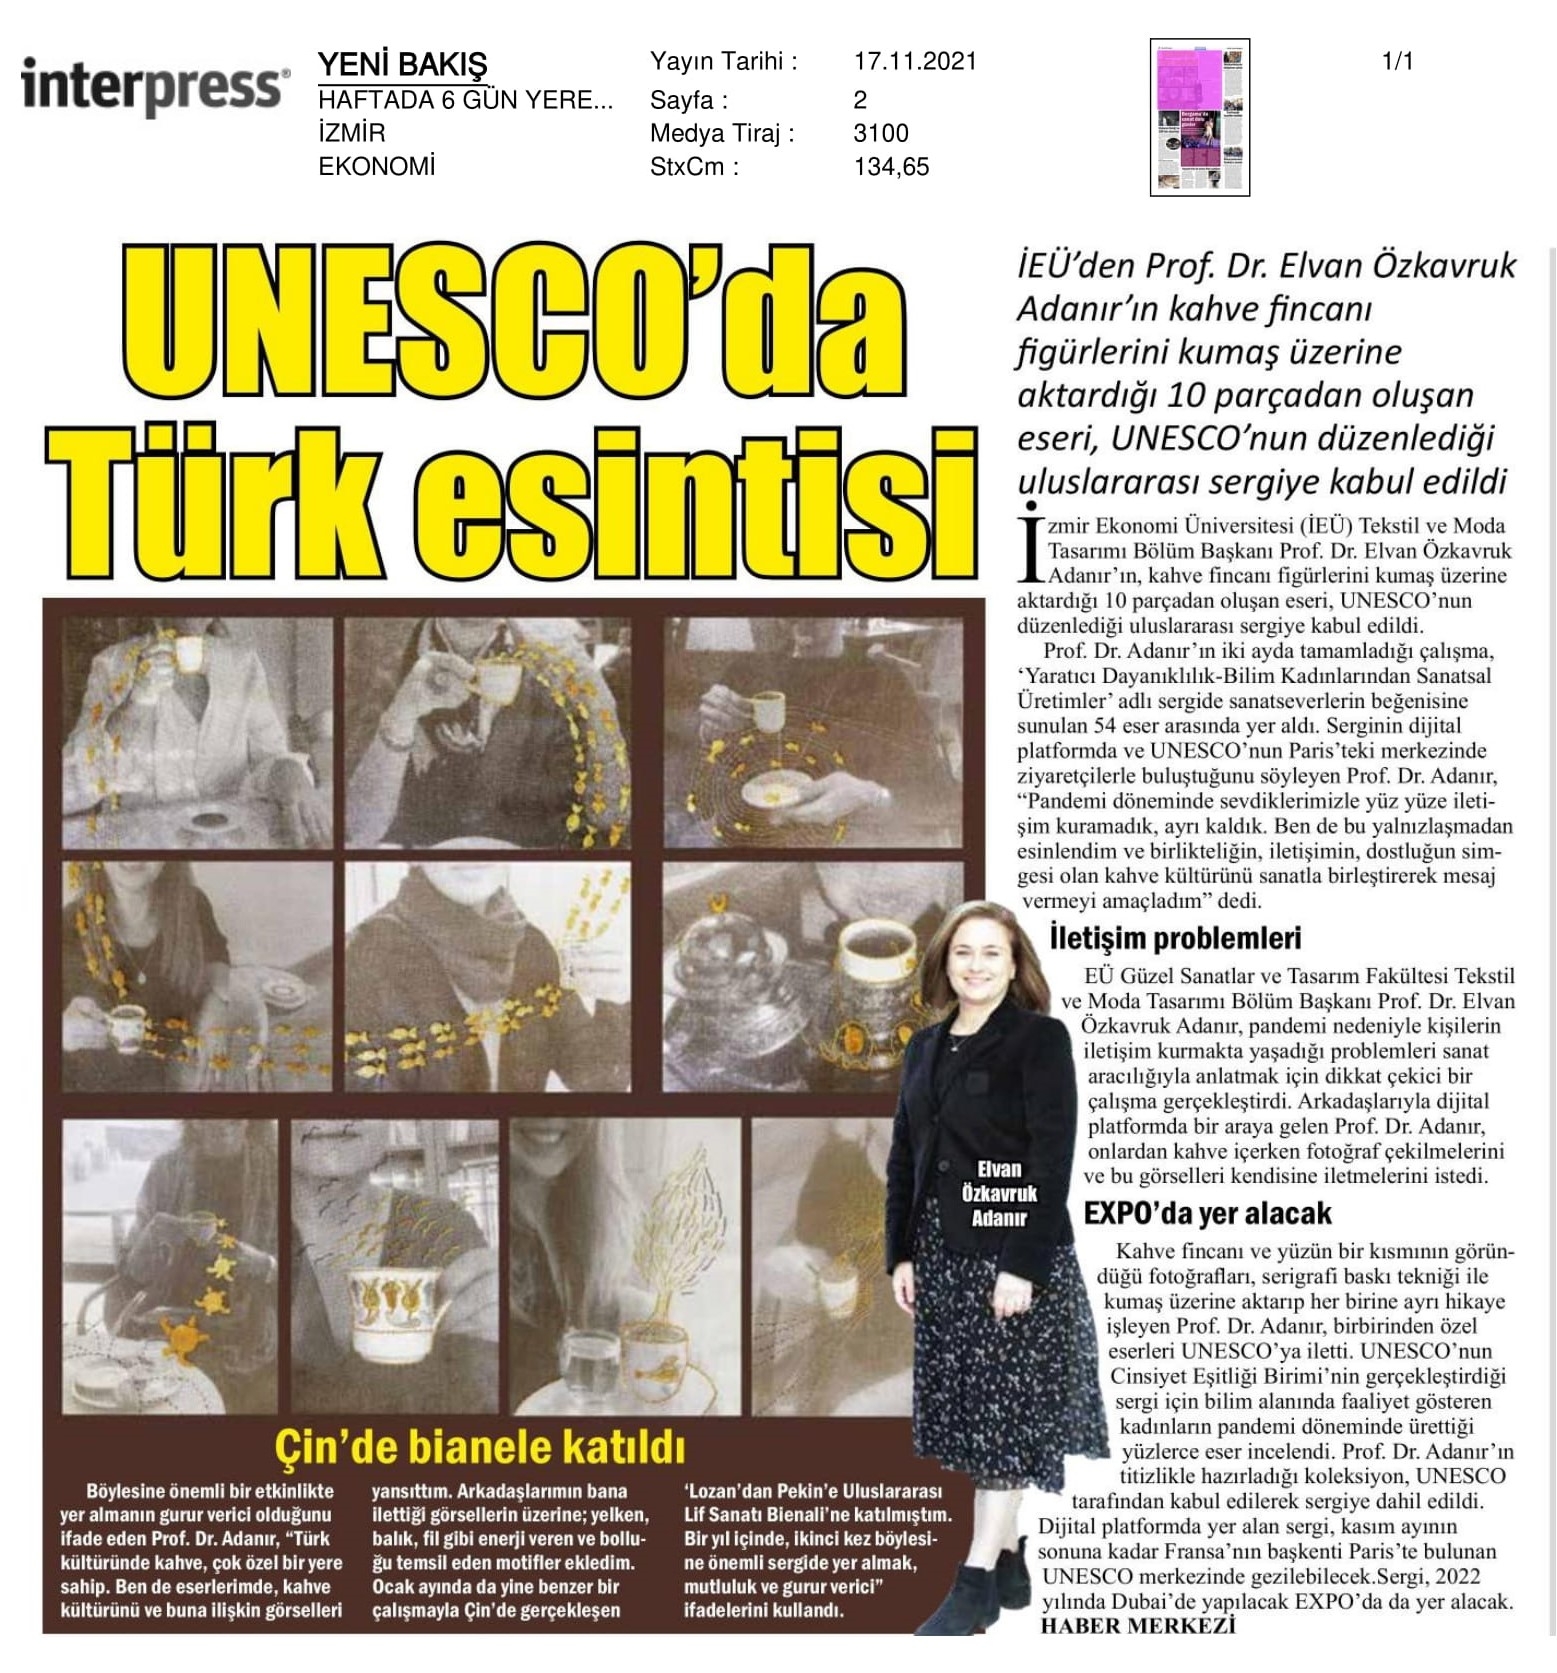 İzmir’de hazırladı, UNESCO’ya ulaştı